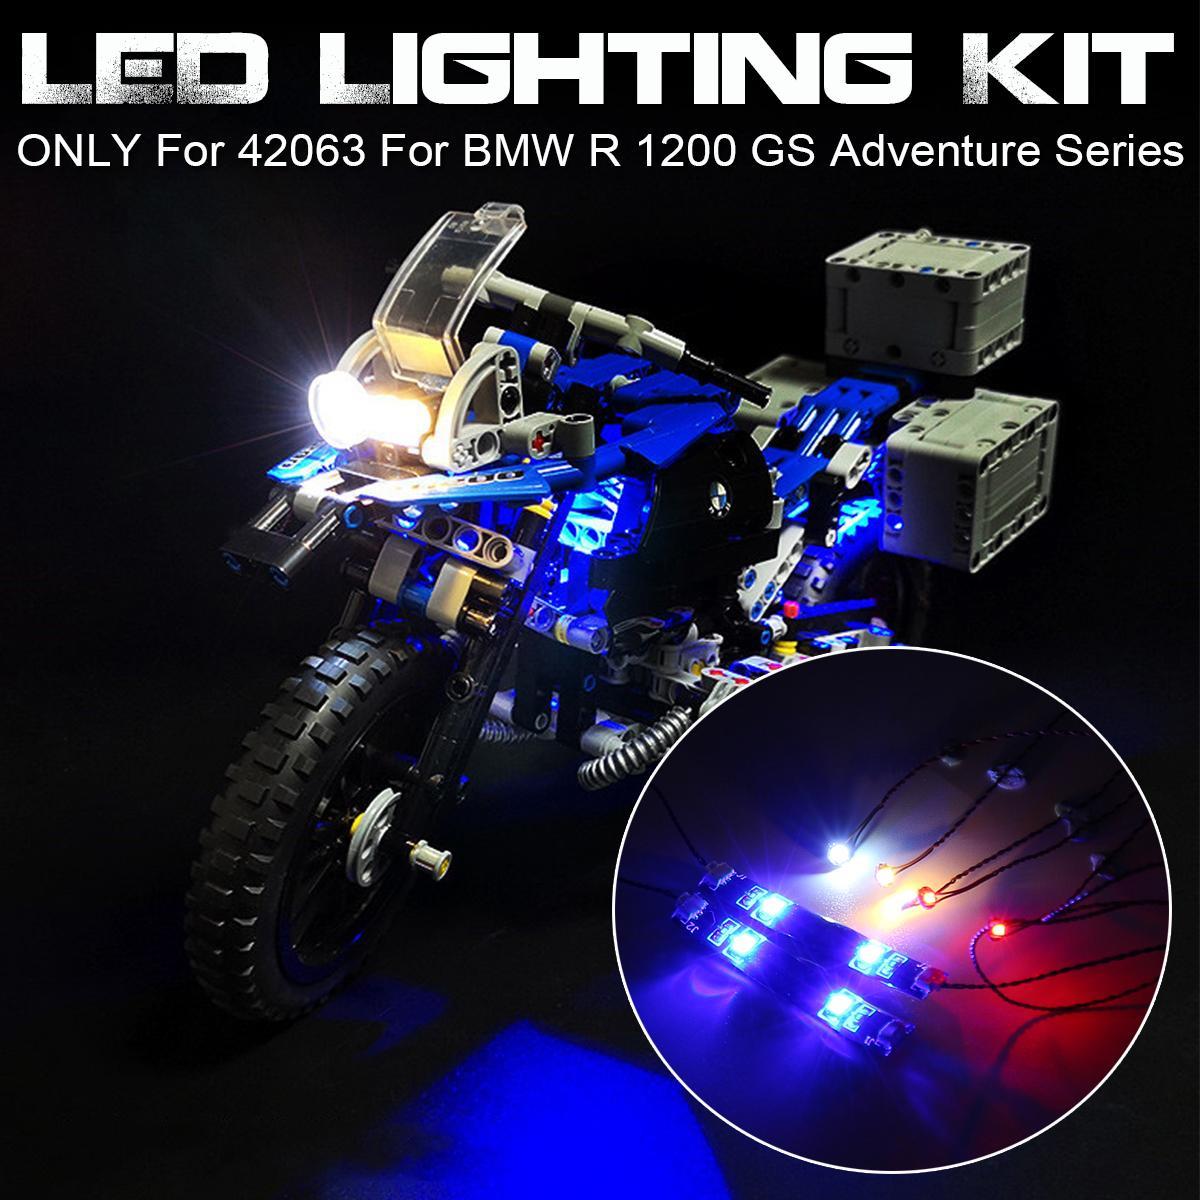 DIY LED Light Lighting Kit ONLY For LEGO 42063 For BMW R 1200 GS Adventure Technic